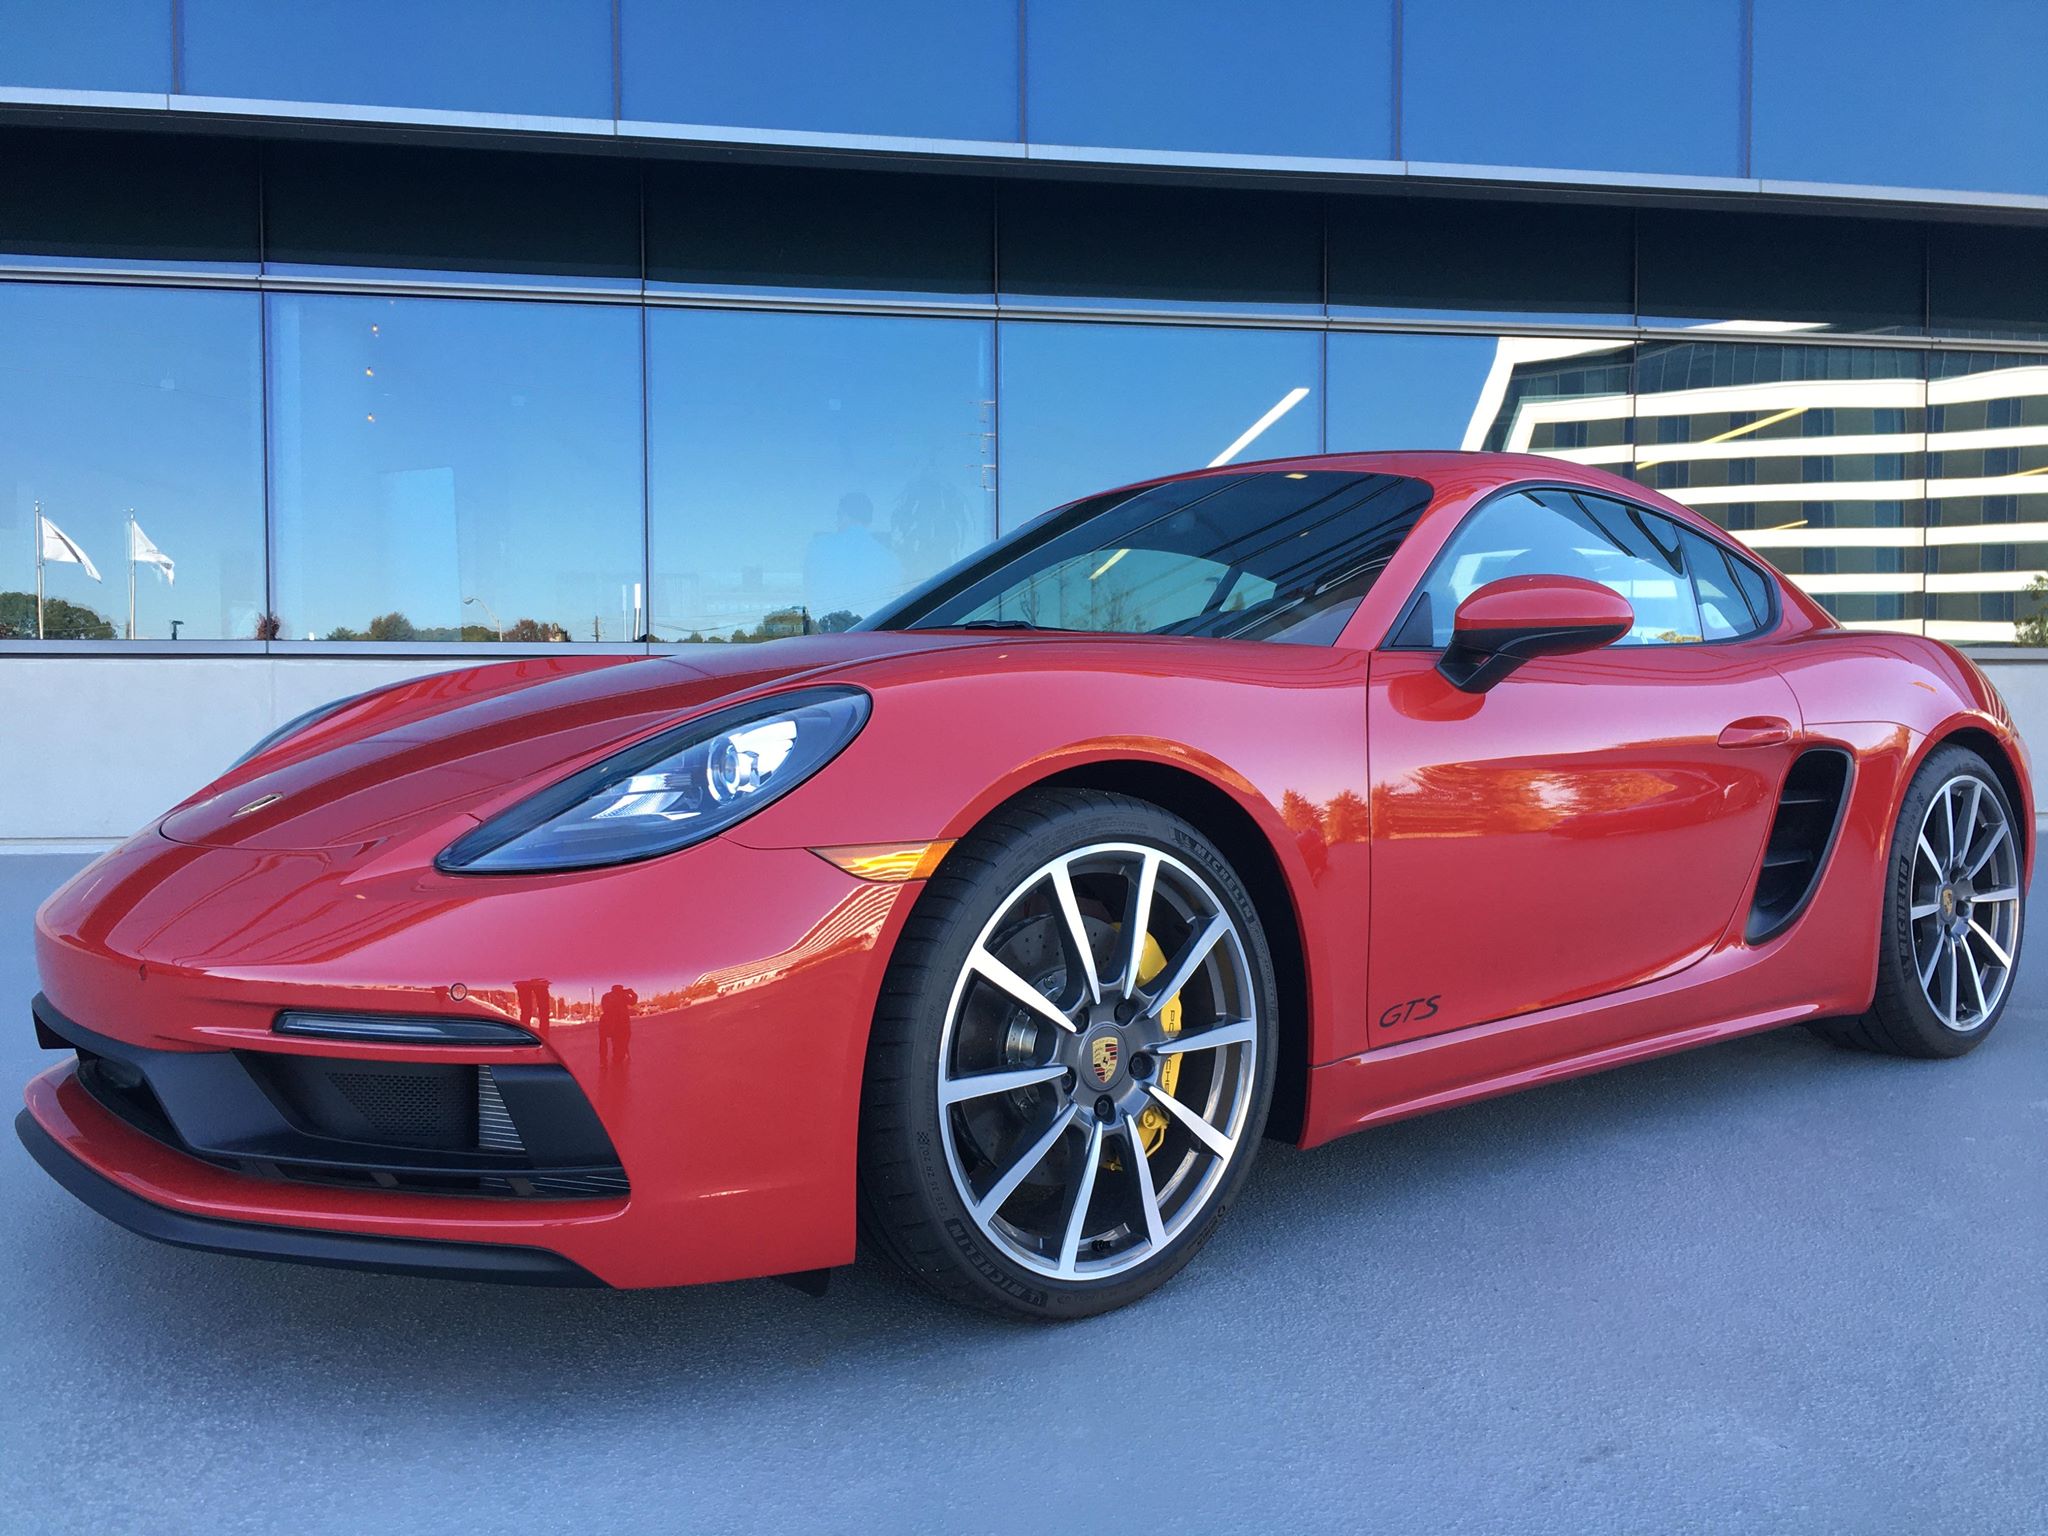  Porsche Experience Center in Atlanta